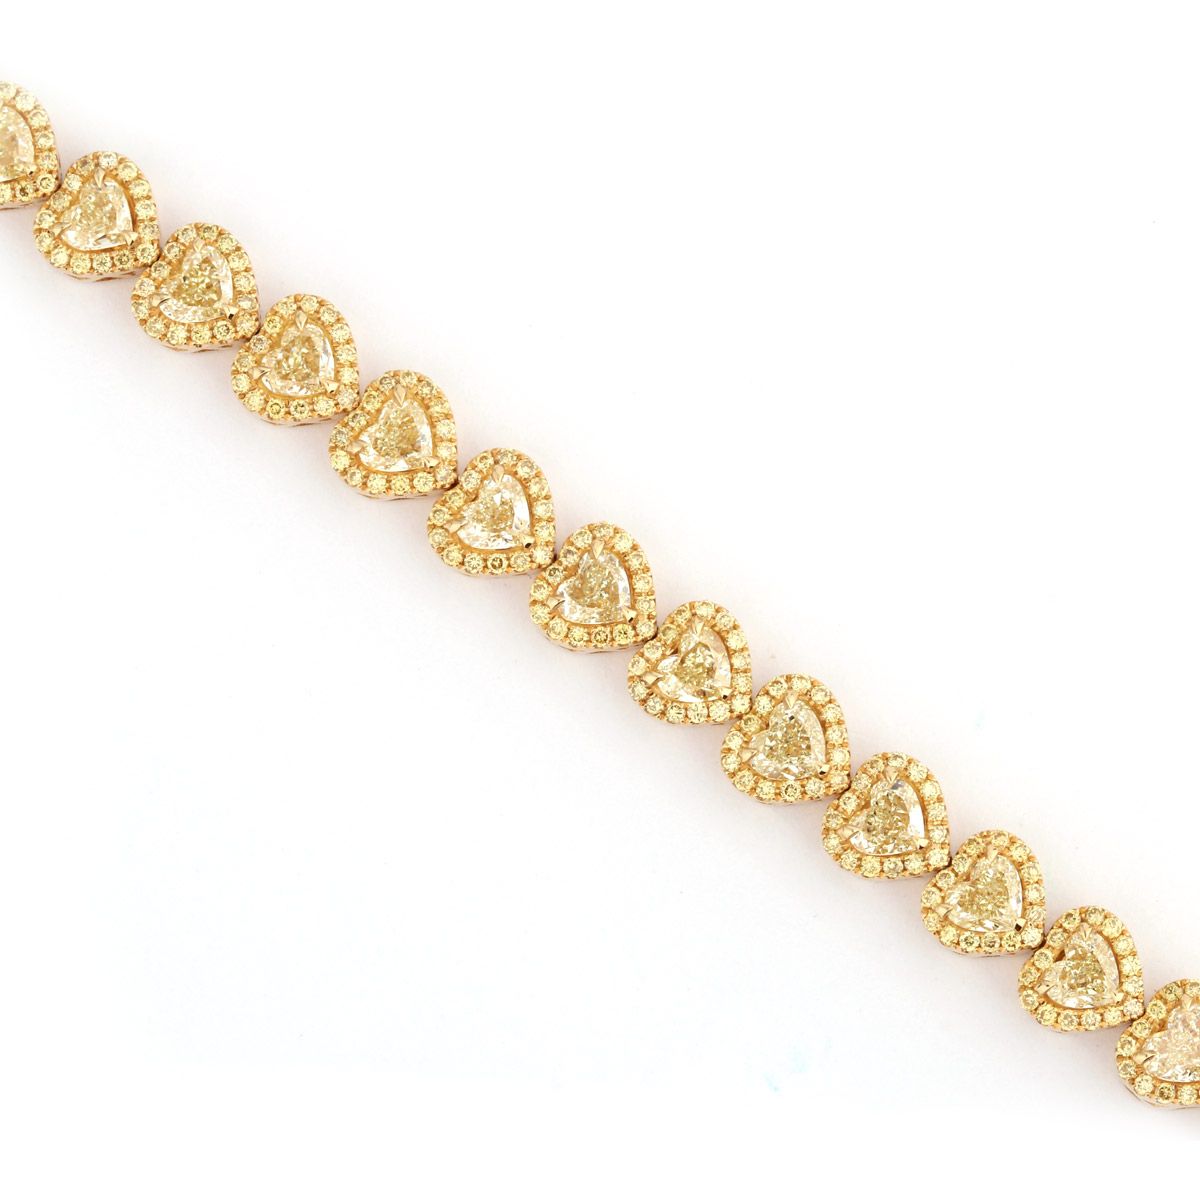 Fancy Light Yellow Diamond Bracelet, 8.94 Ct. TW, Heart shape, EG_Lab Certified, J520169